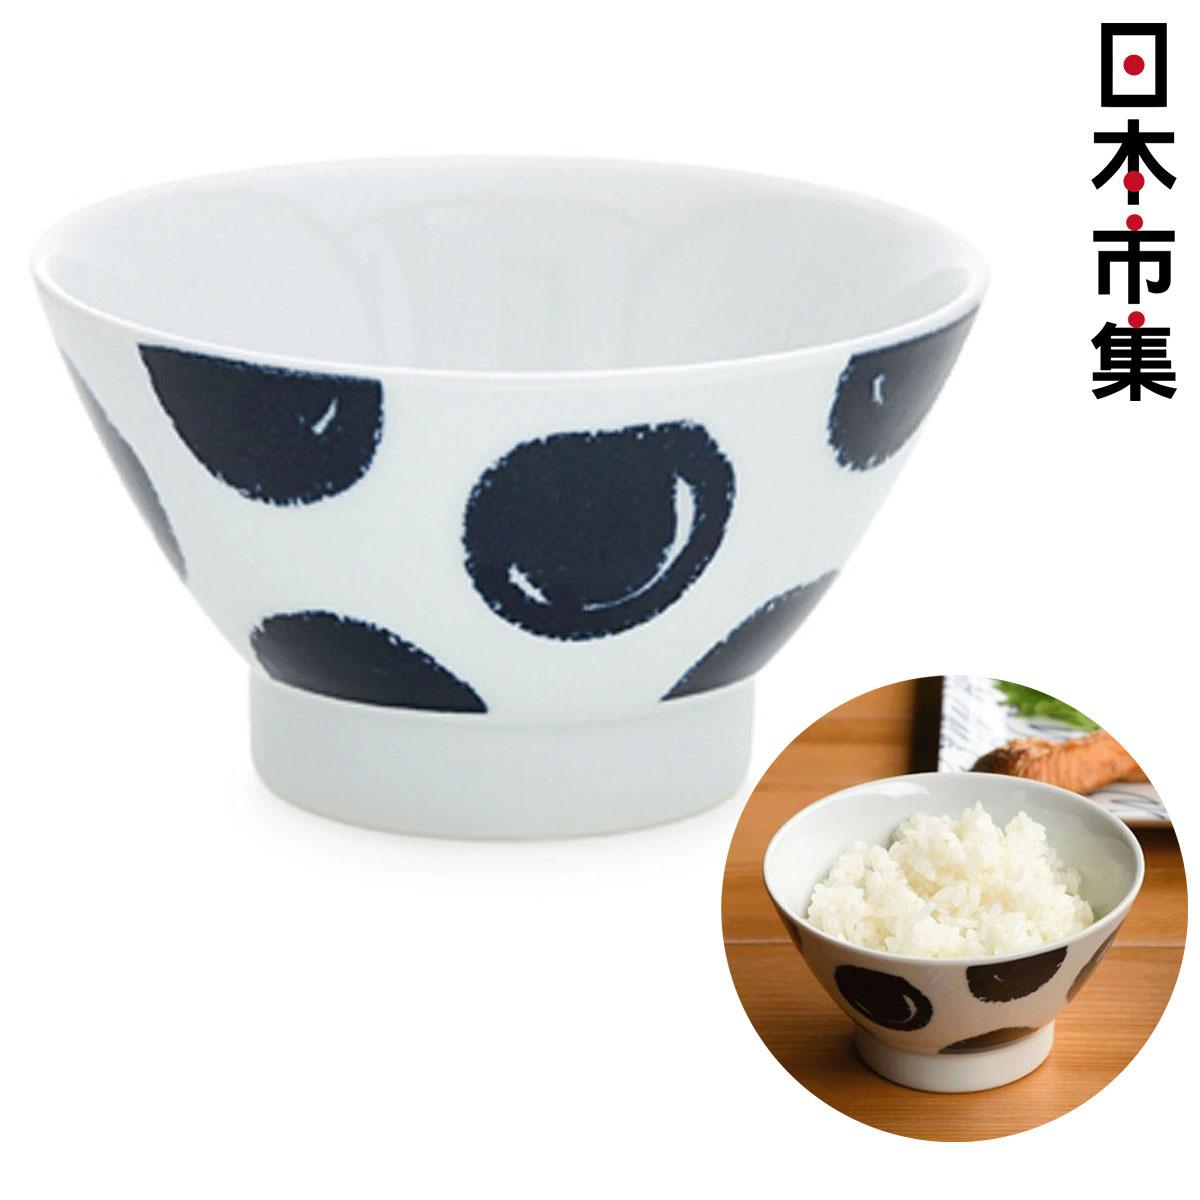 日本Natural69® Swatch系列《Palette》波佐見燒 日本製 高腳陶瓷碗【市集世界 - 日本市集】